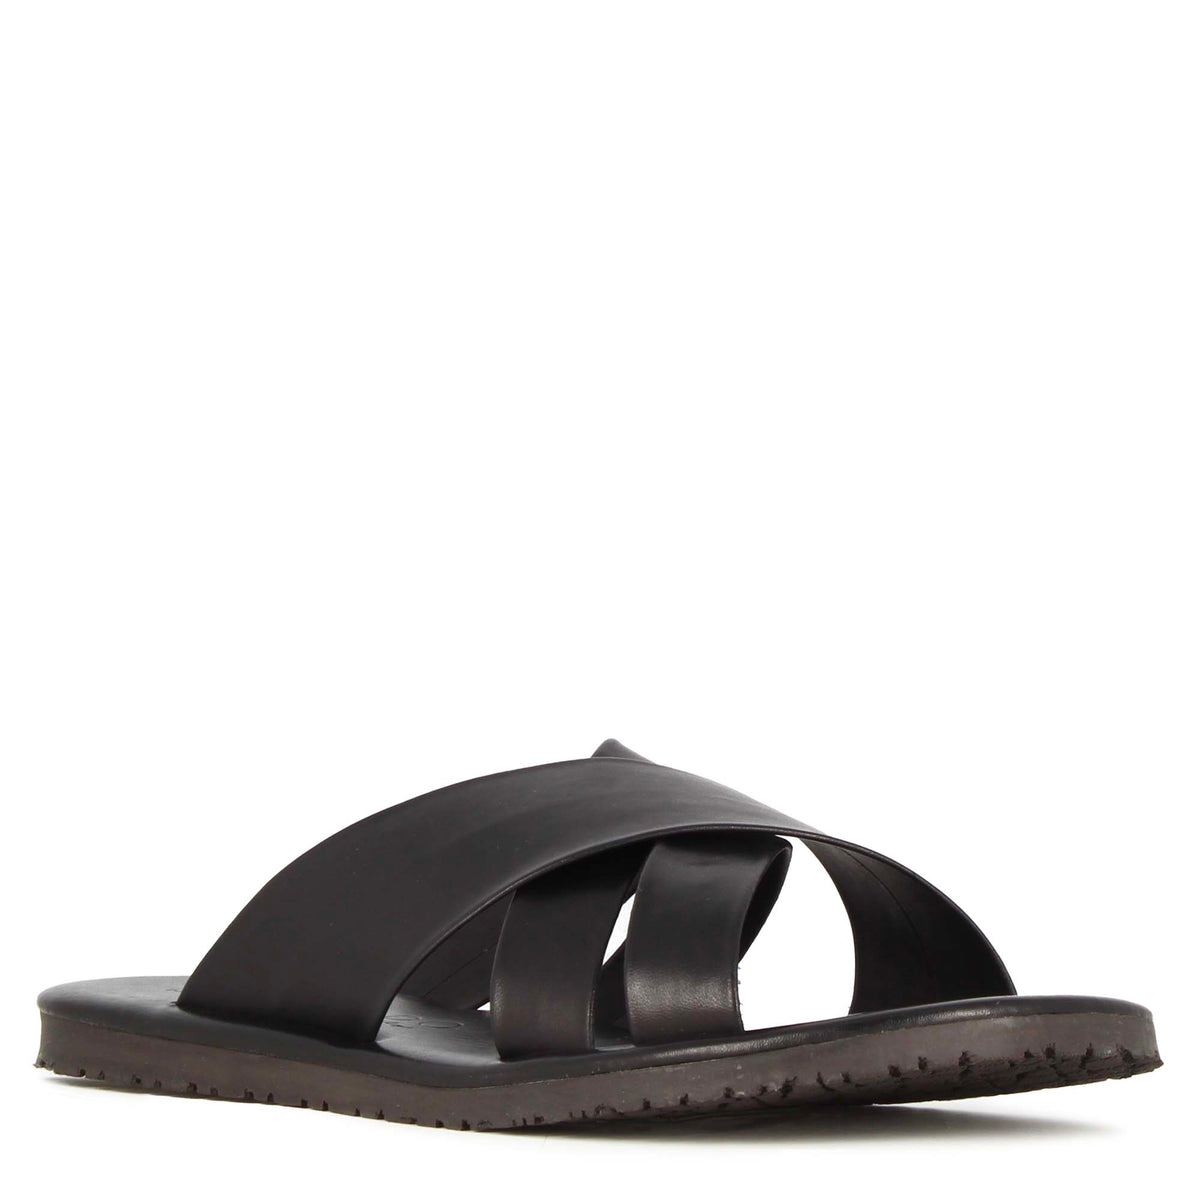 Men's slipper sandal with handmade black leather bands